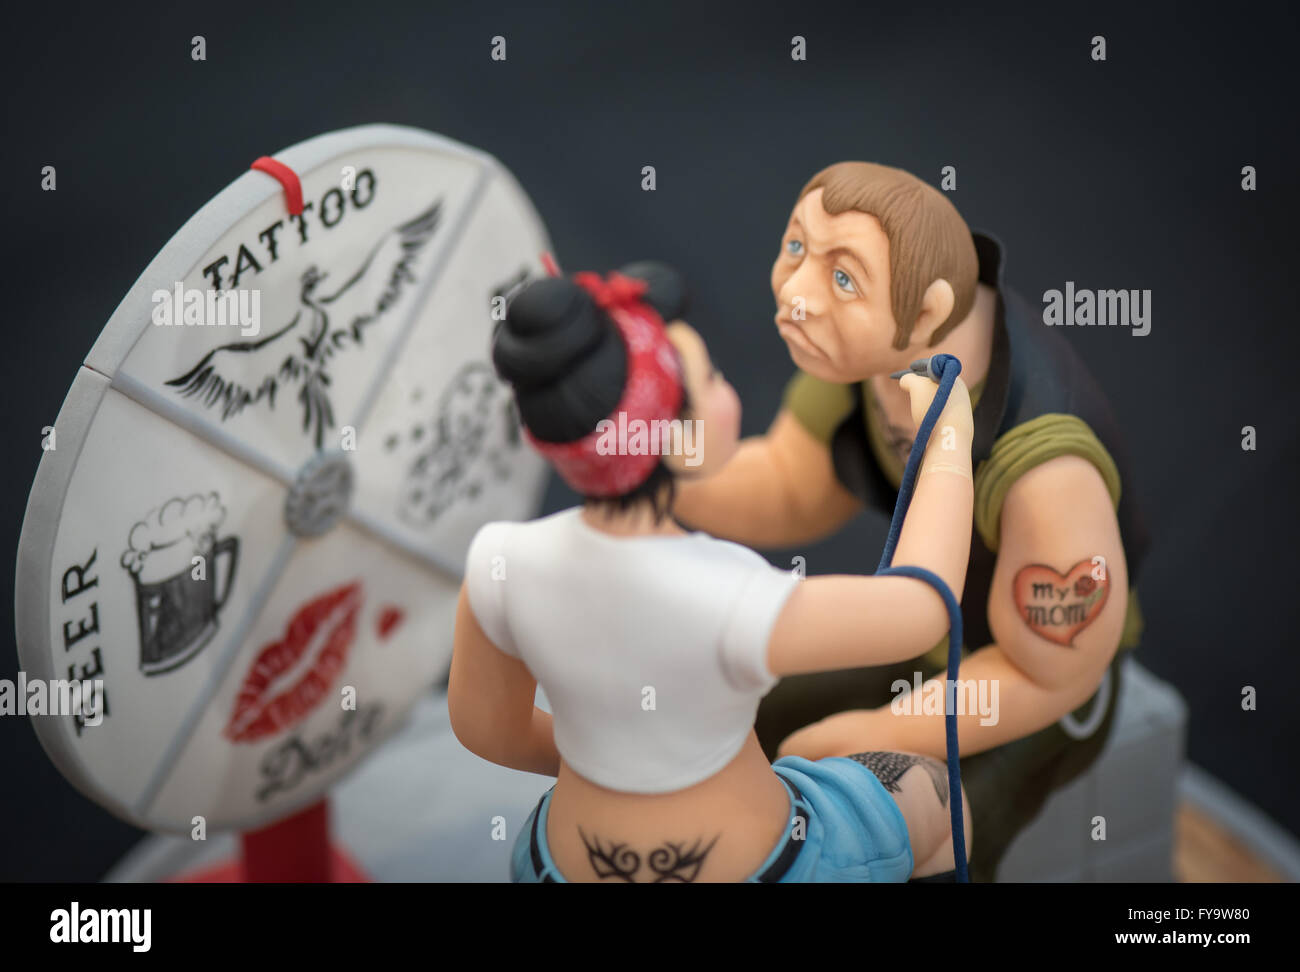 Tattoo Studio Frau und Mann Kuchen Dekorationen Kuchen International – The Sugarcraft, Kuchen dekorieren und Backen-Show in London Stockfoto